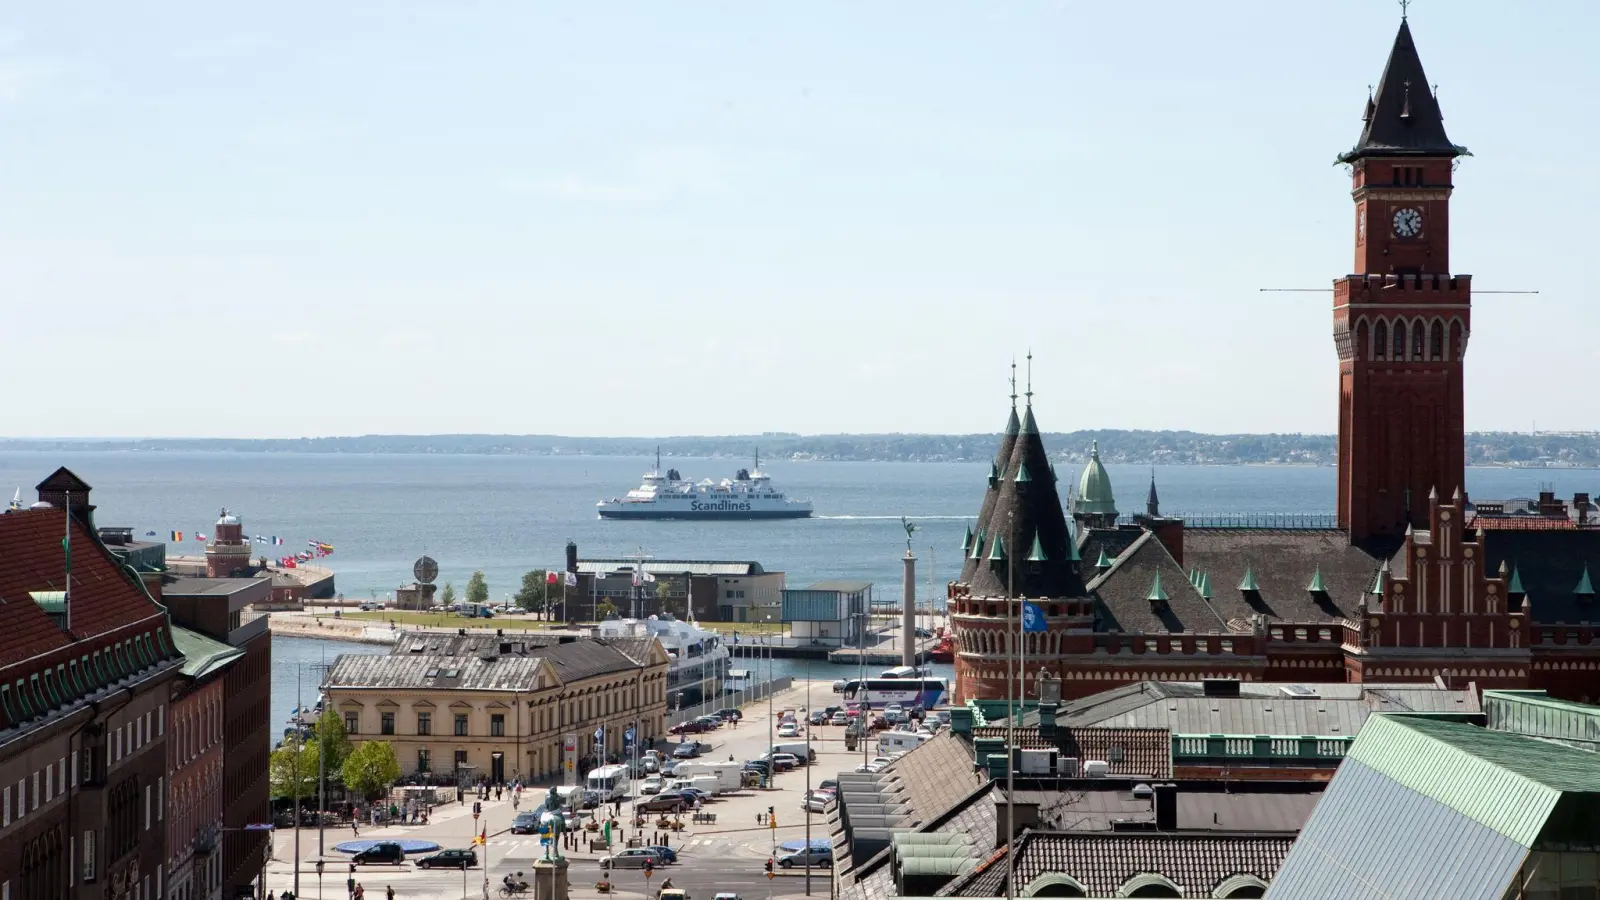 Blick auf den Hafen von Helsingborg, dem Einfallstor für Drogen nach Schweden. (Foto: Friso Gentsch/dpa)